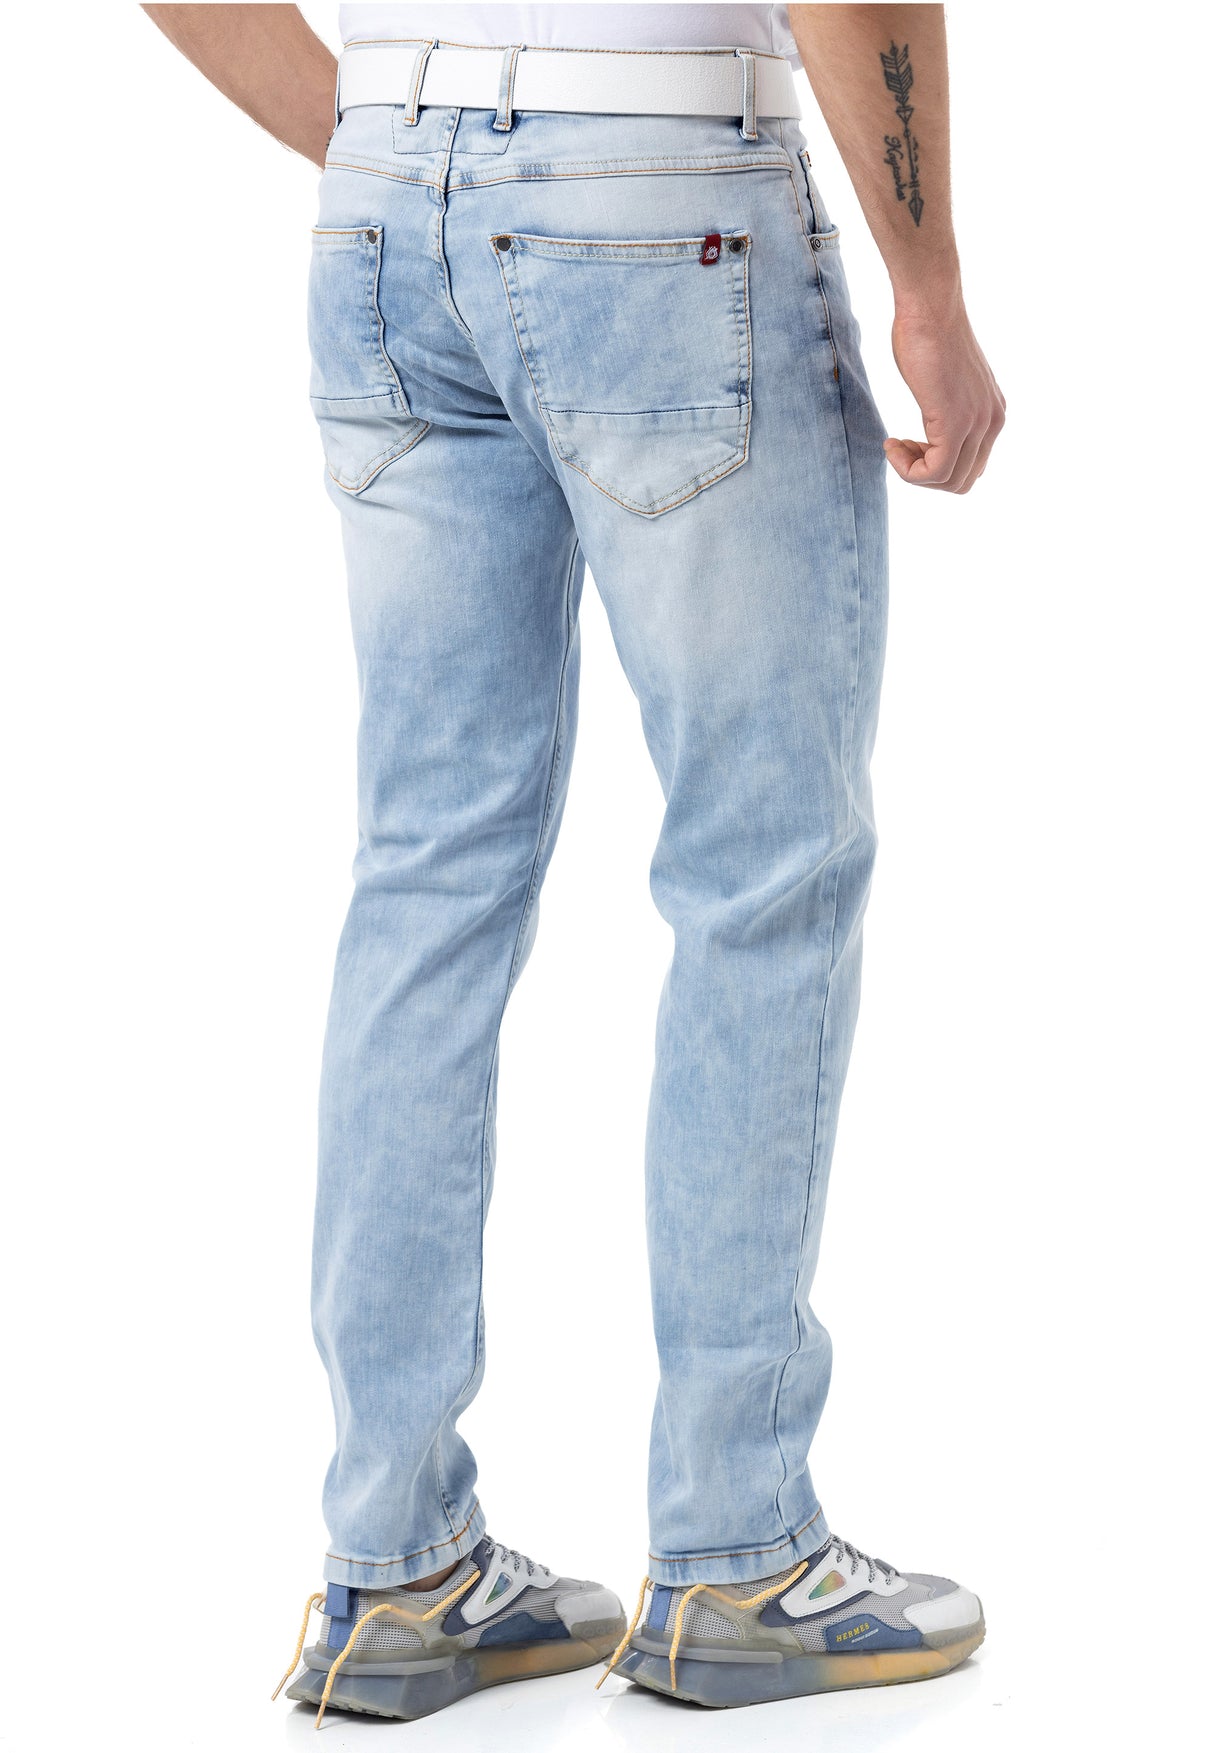 CD820 Jeans Slim basici per uomo